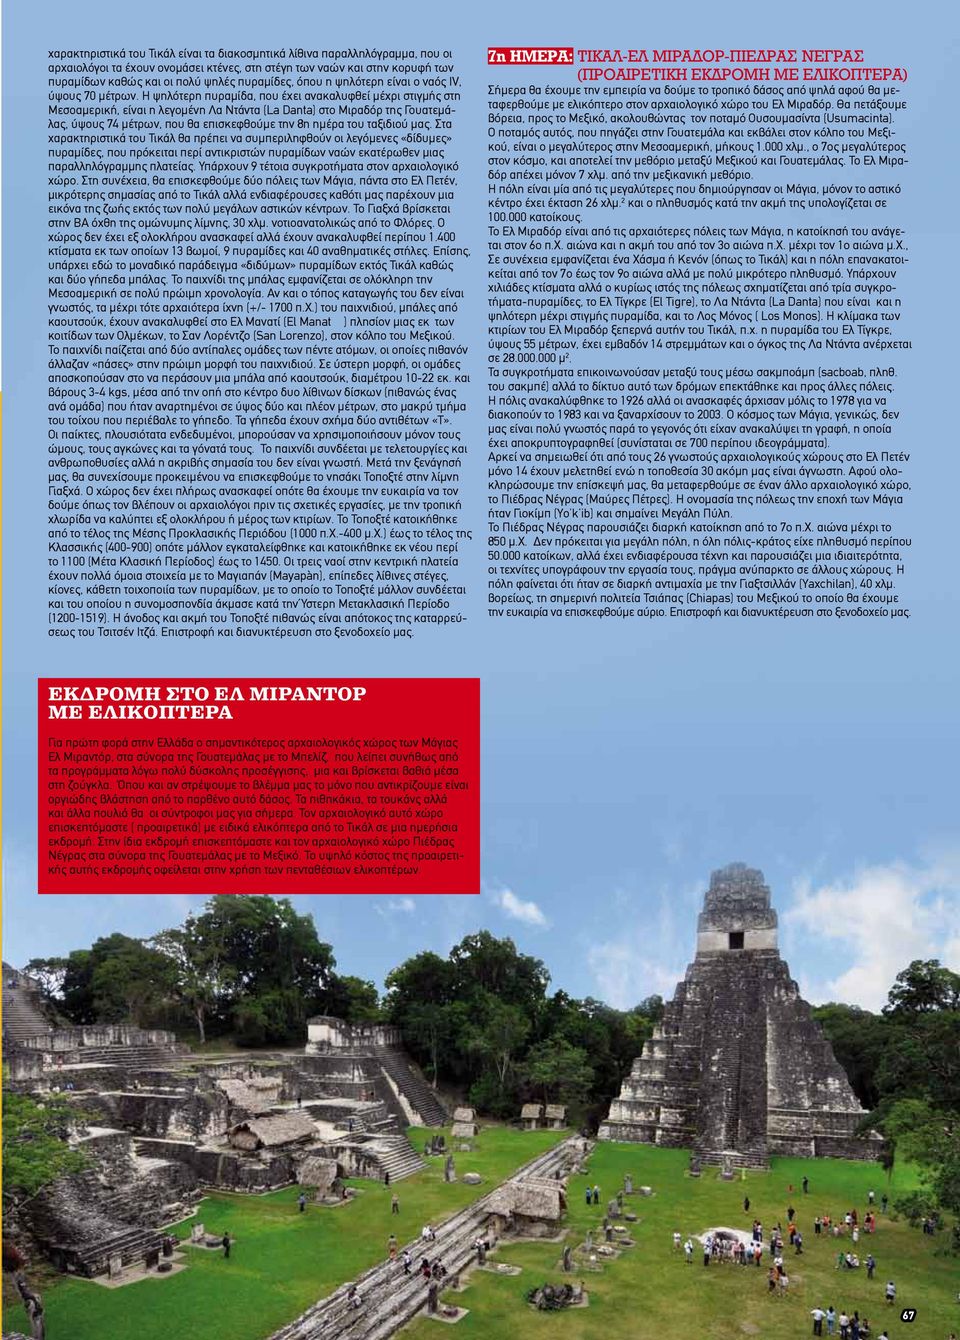 Η ψηλότερη πυραμίδα, που έχει ανακαλυφθεί μέχρι στιγμής στη Μεσοαμερική, είναι η λεγομένη Λα Ντάντα (La Danta) στο Μιραδόρ της Γουατεμάλας, ύψους 74 μέτρων, που θα επισκεφθούμε την 8η ημέρα του